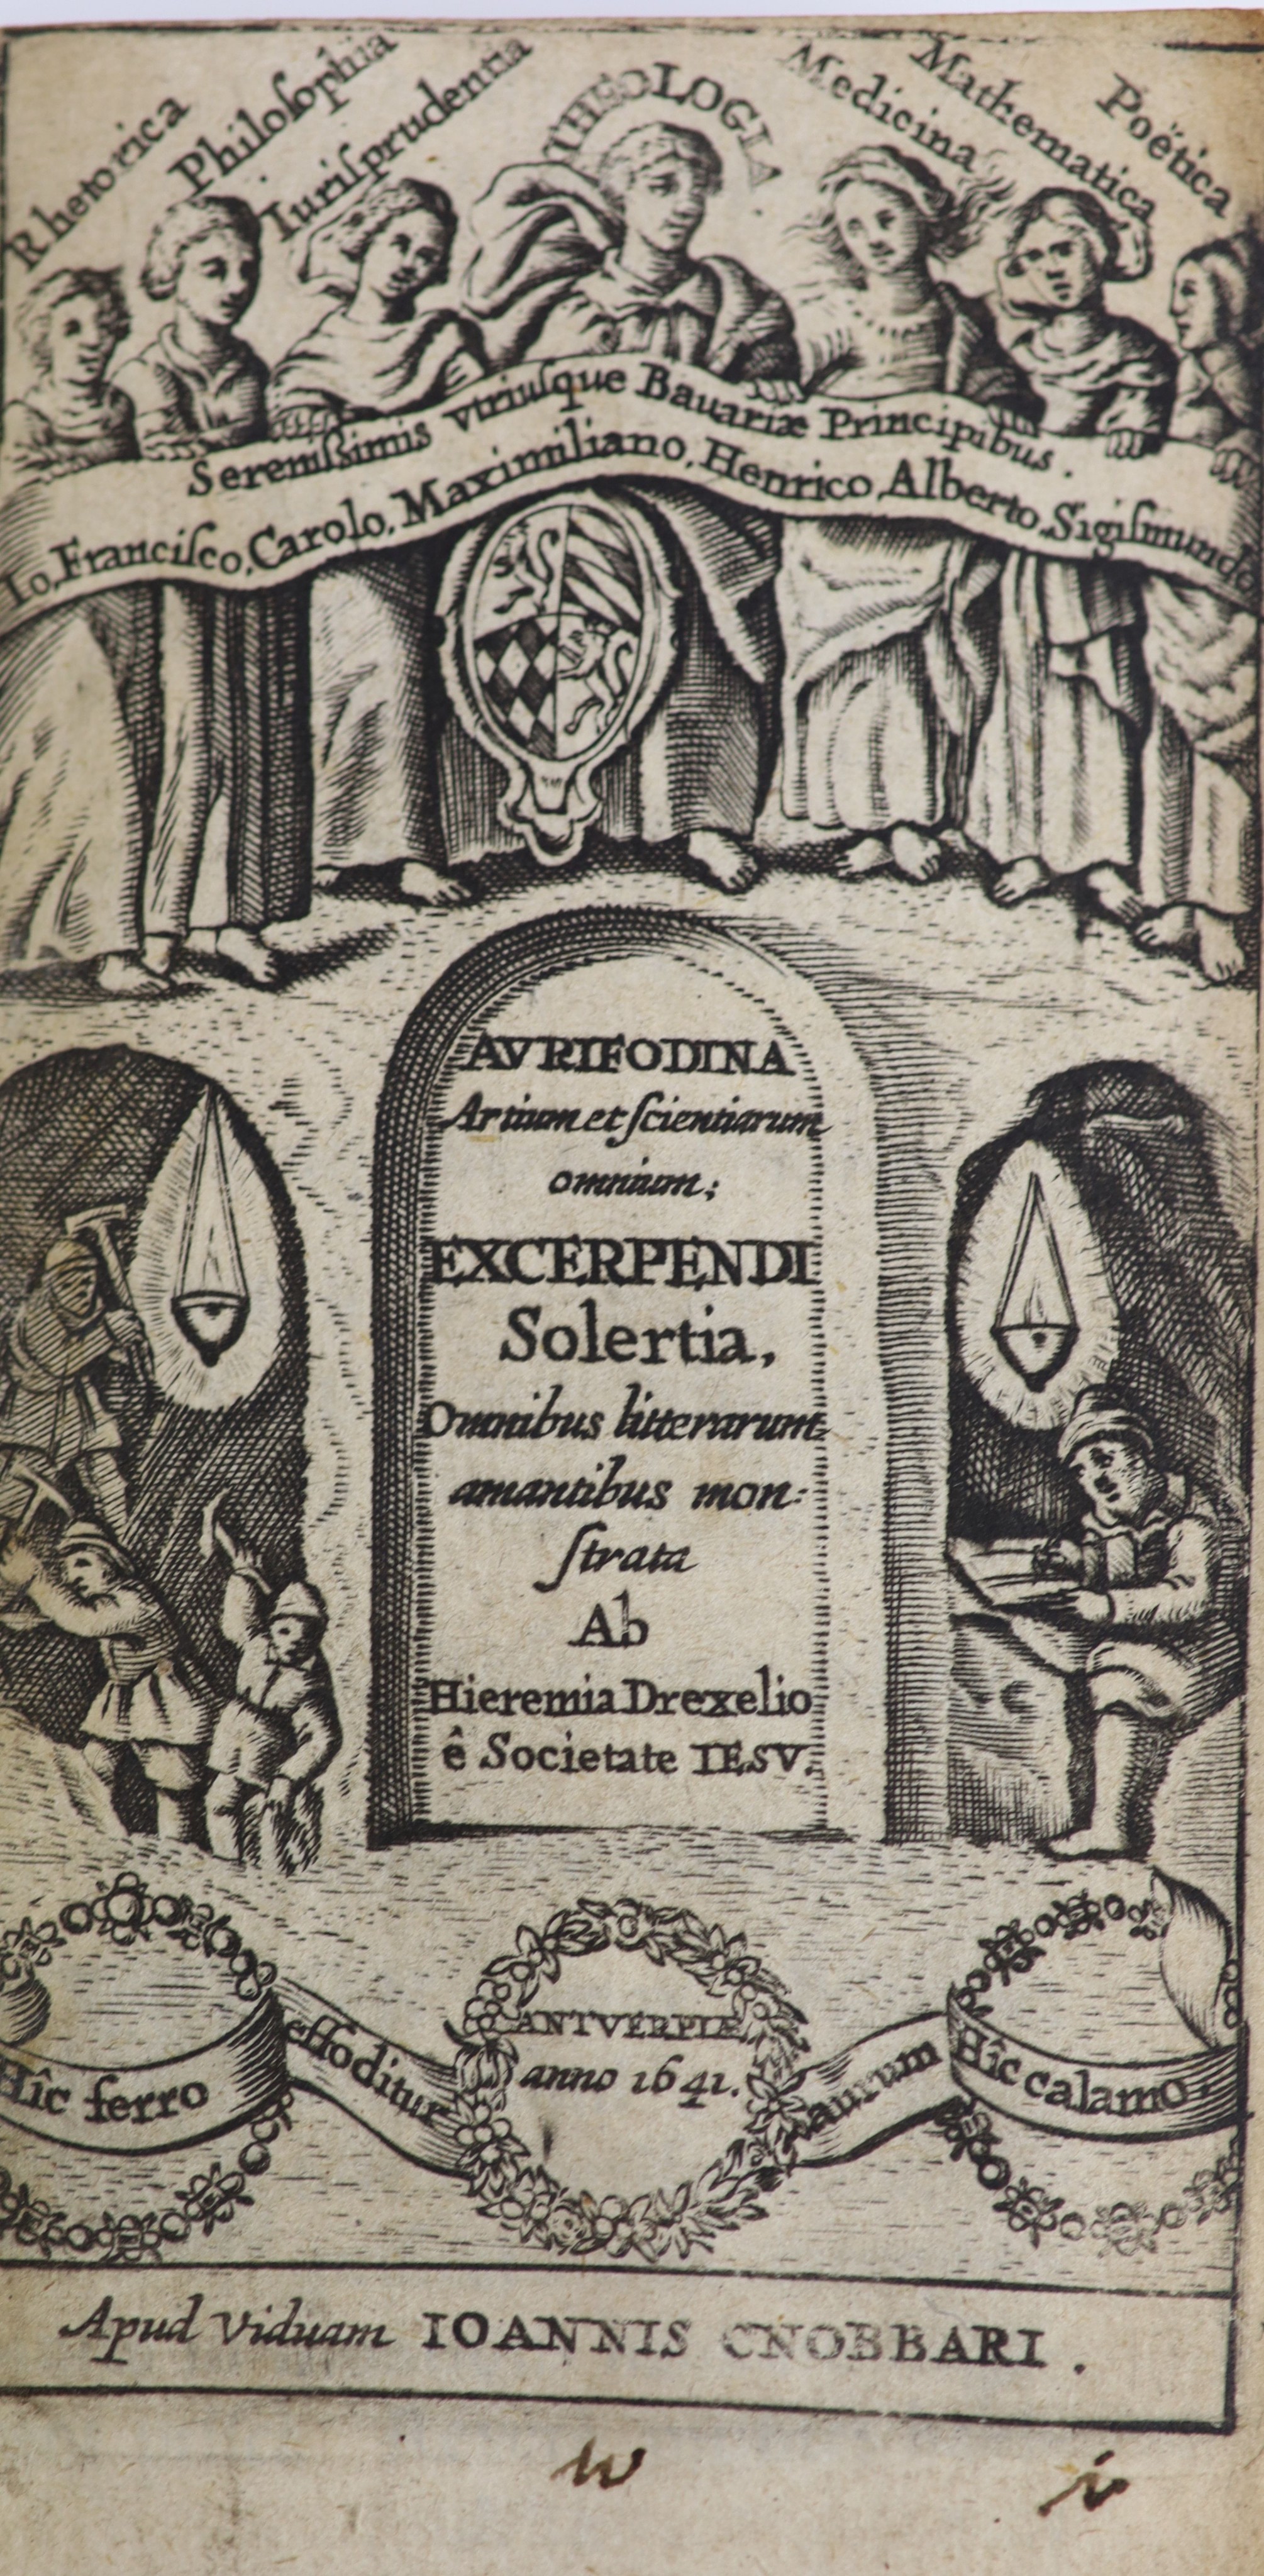 Drexilius, Jeremias. Aurifodina Artium et Scientiarum Omnium, Excerpendi Solertia ...